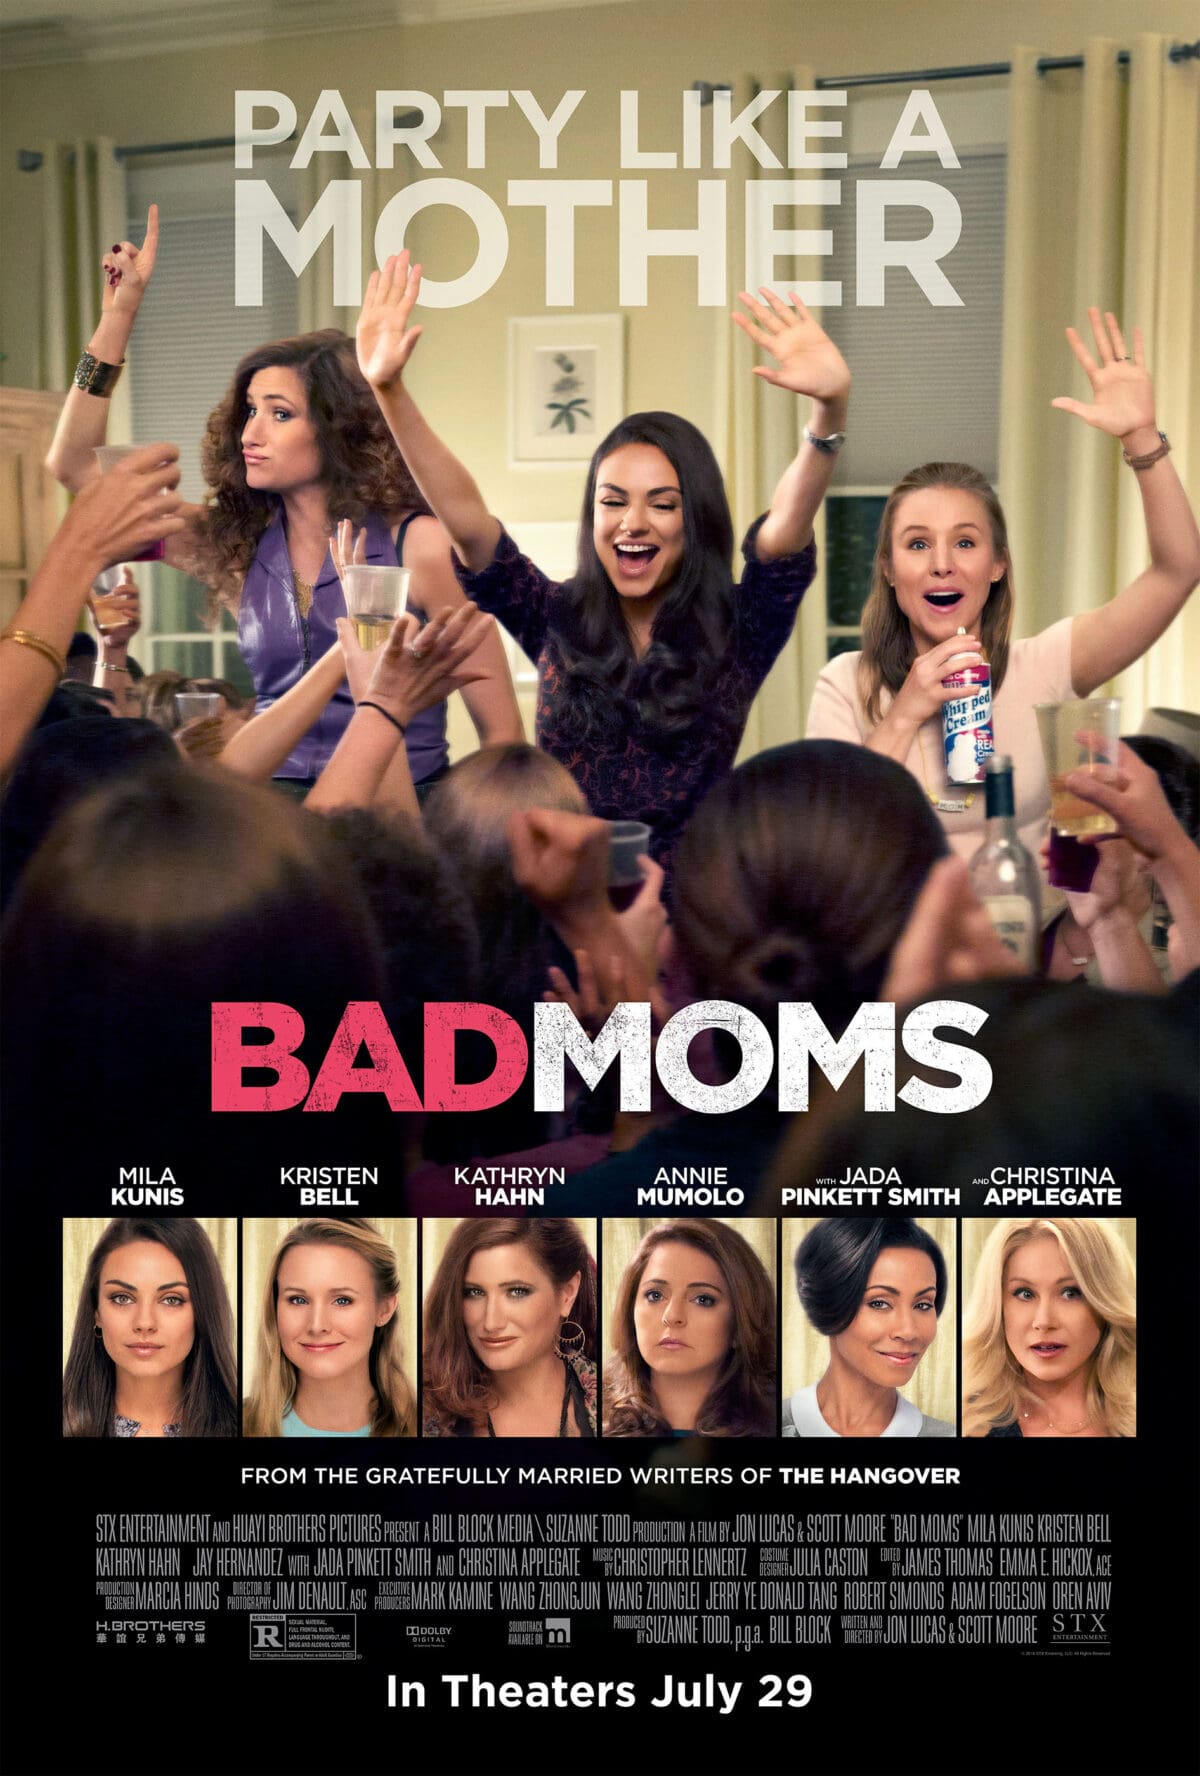 Movies Like The Hangover - Bad Moms